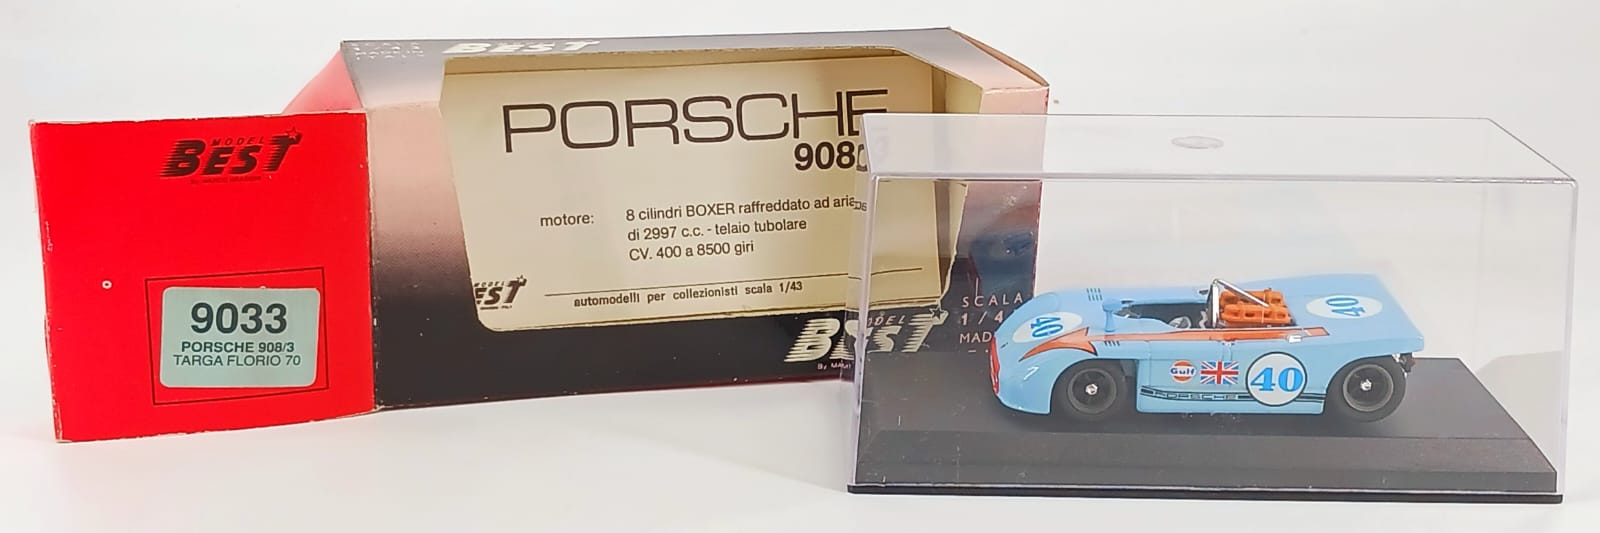 Porsche 908/3 Targa Florio 1970 1/43